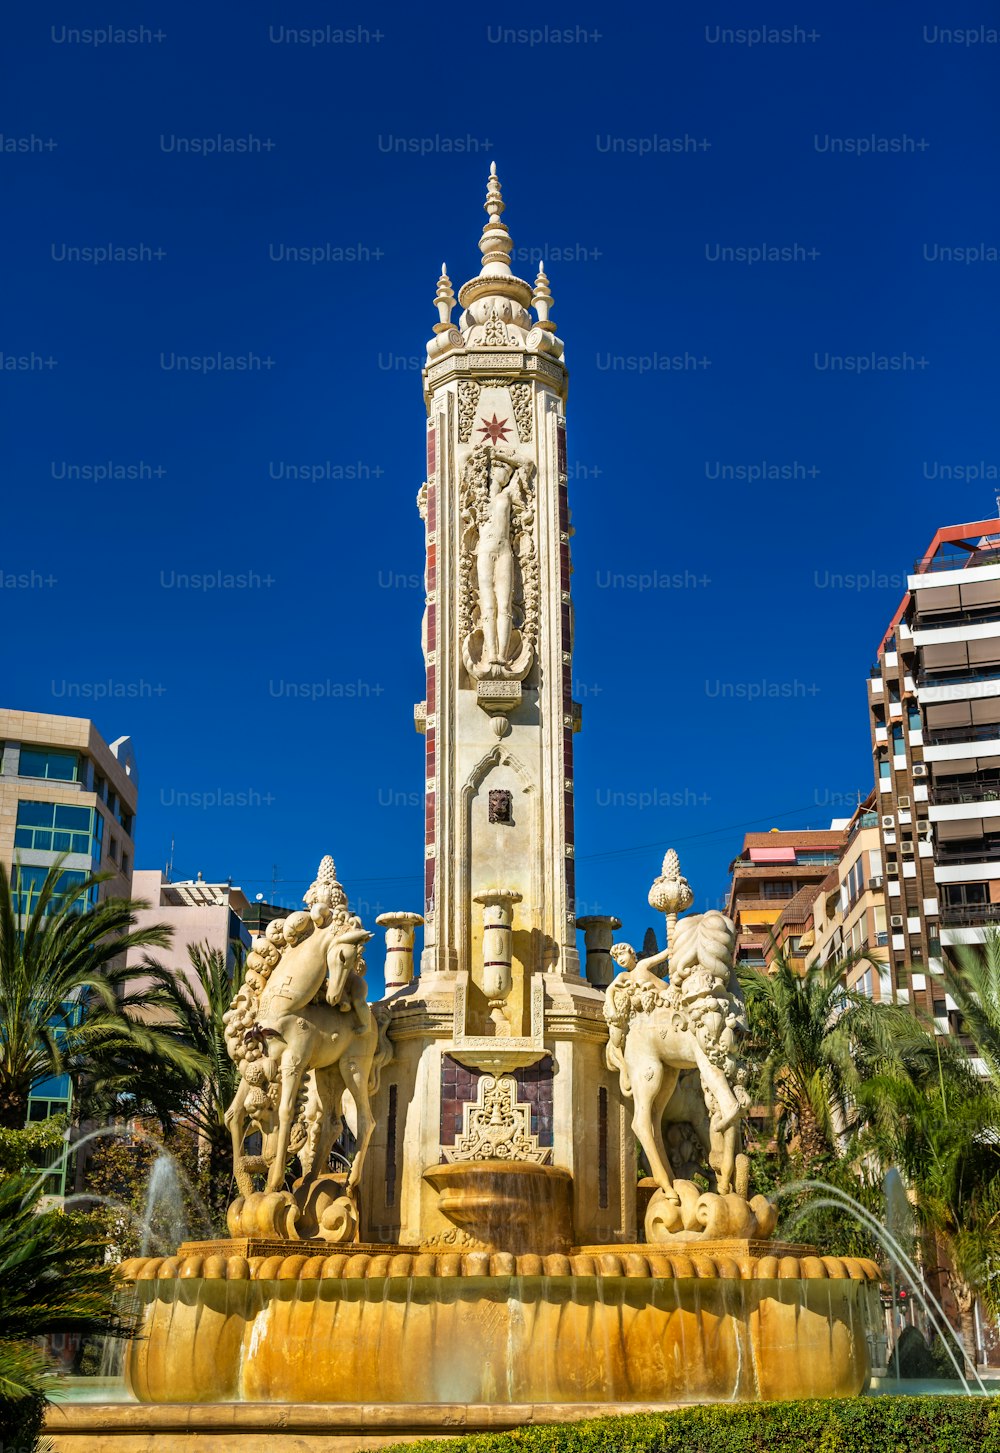 La Fuente de Levante Fountain on Luceros Square in Alicante - Spain